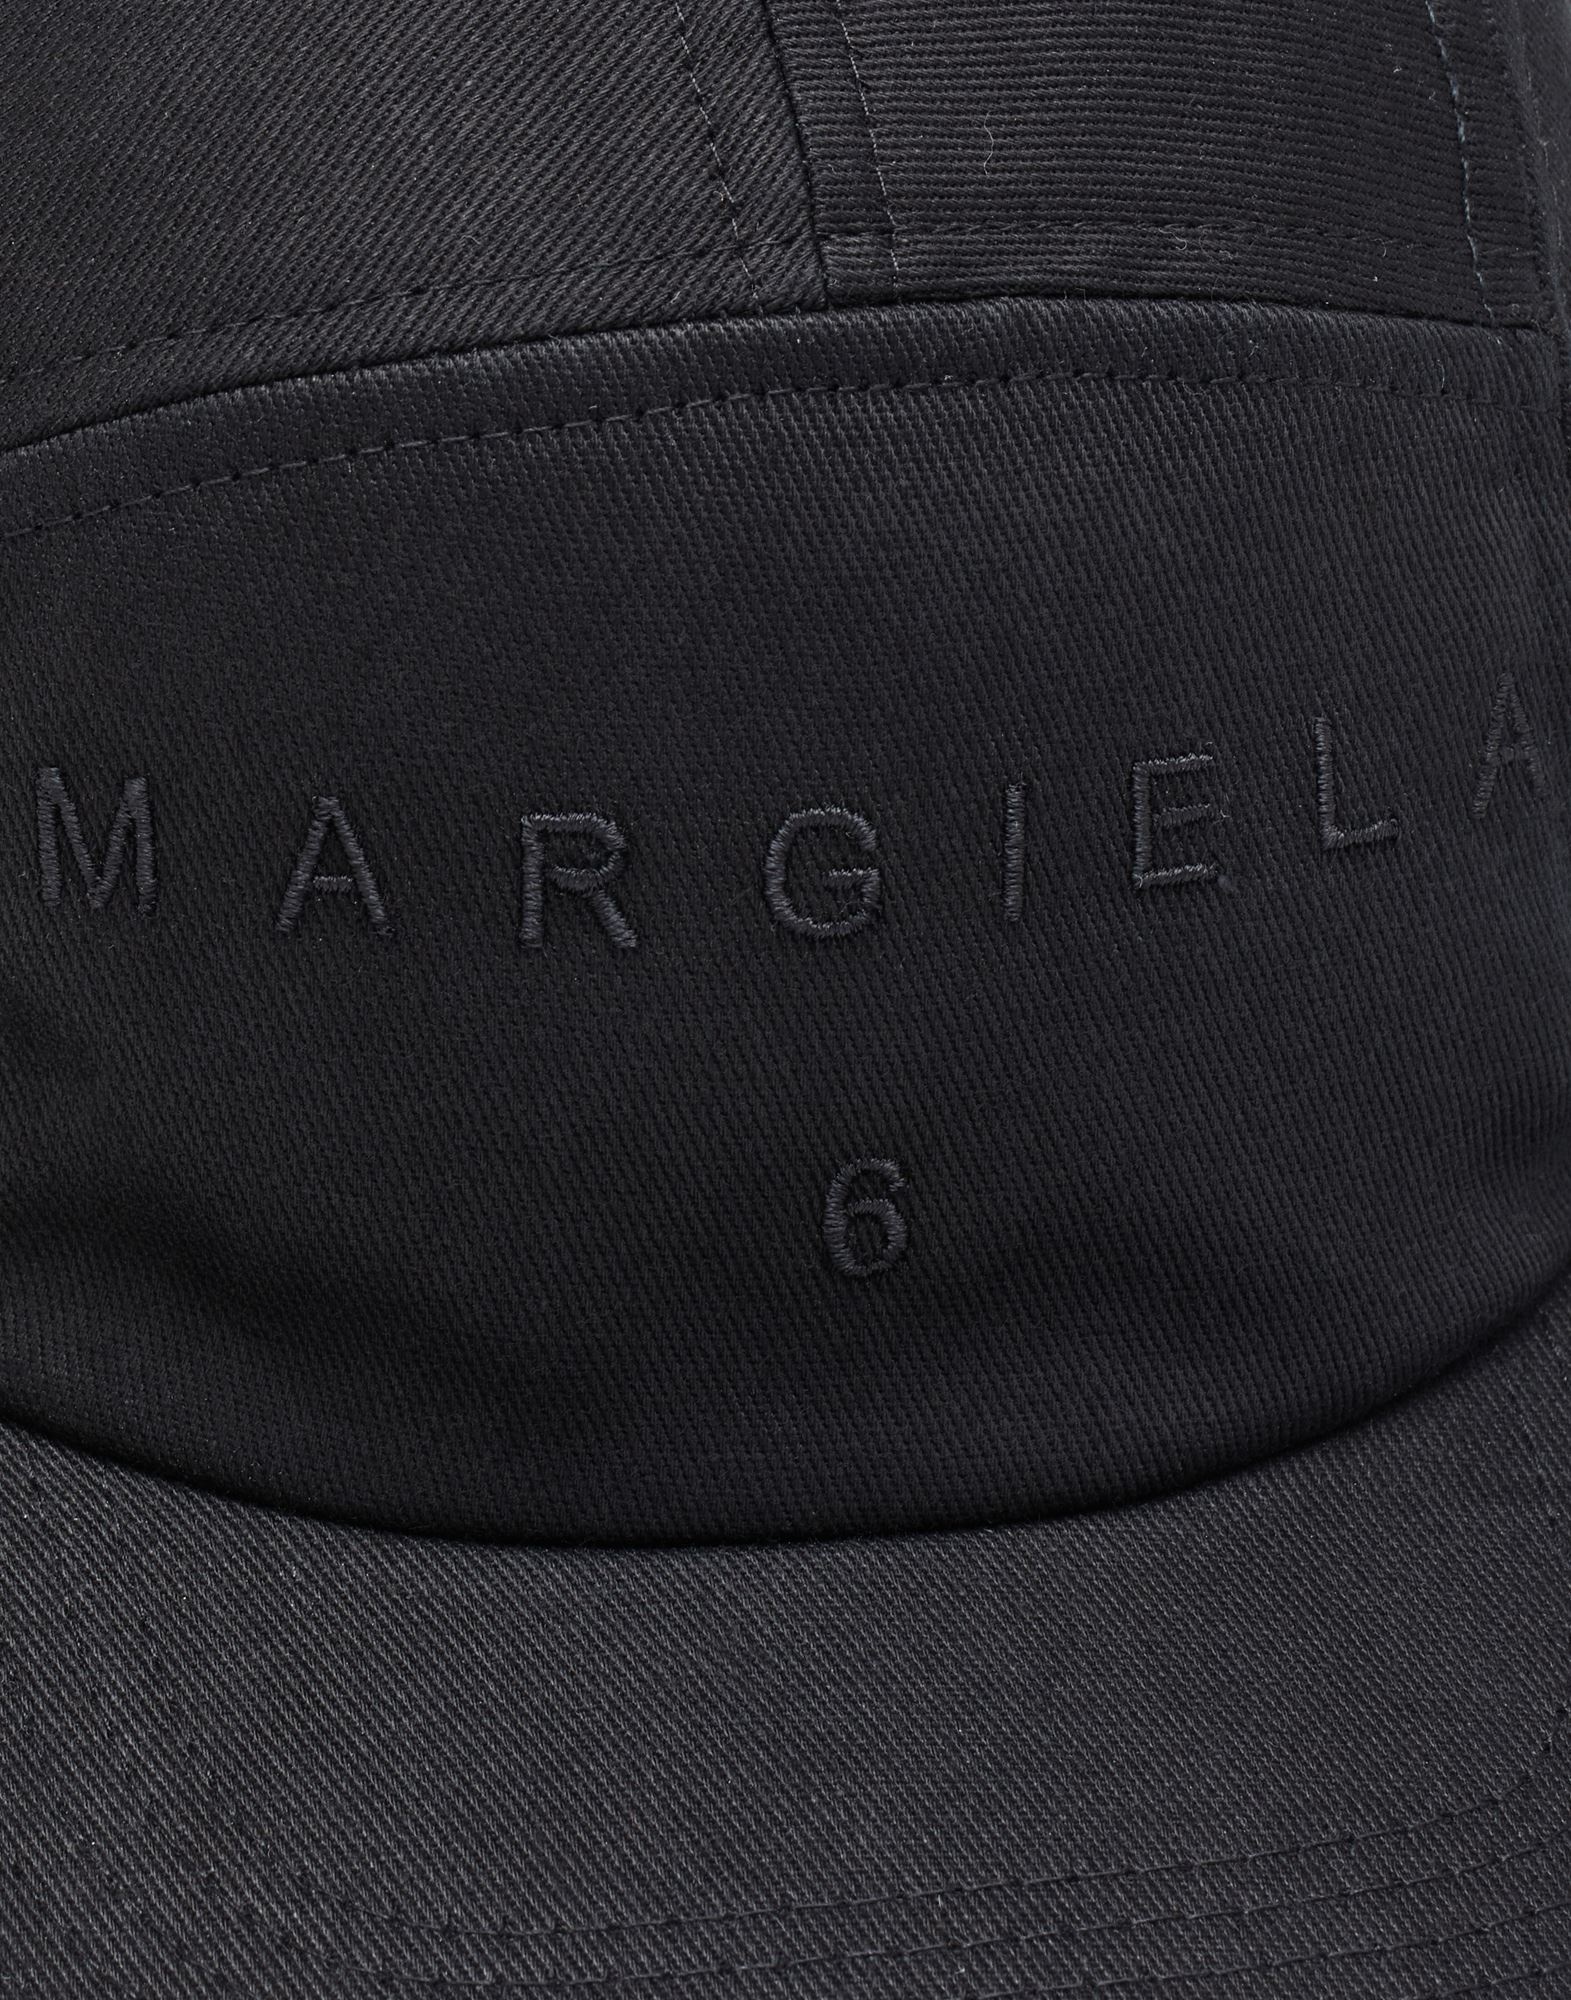 Margiela 6 logo cap - 3